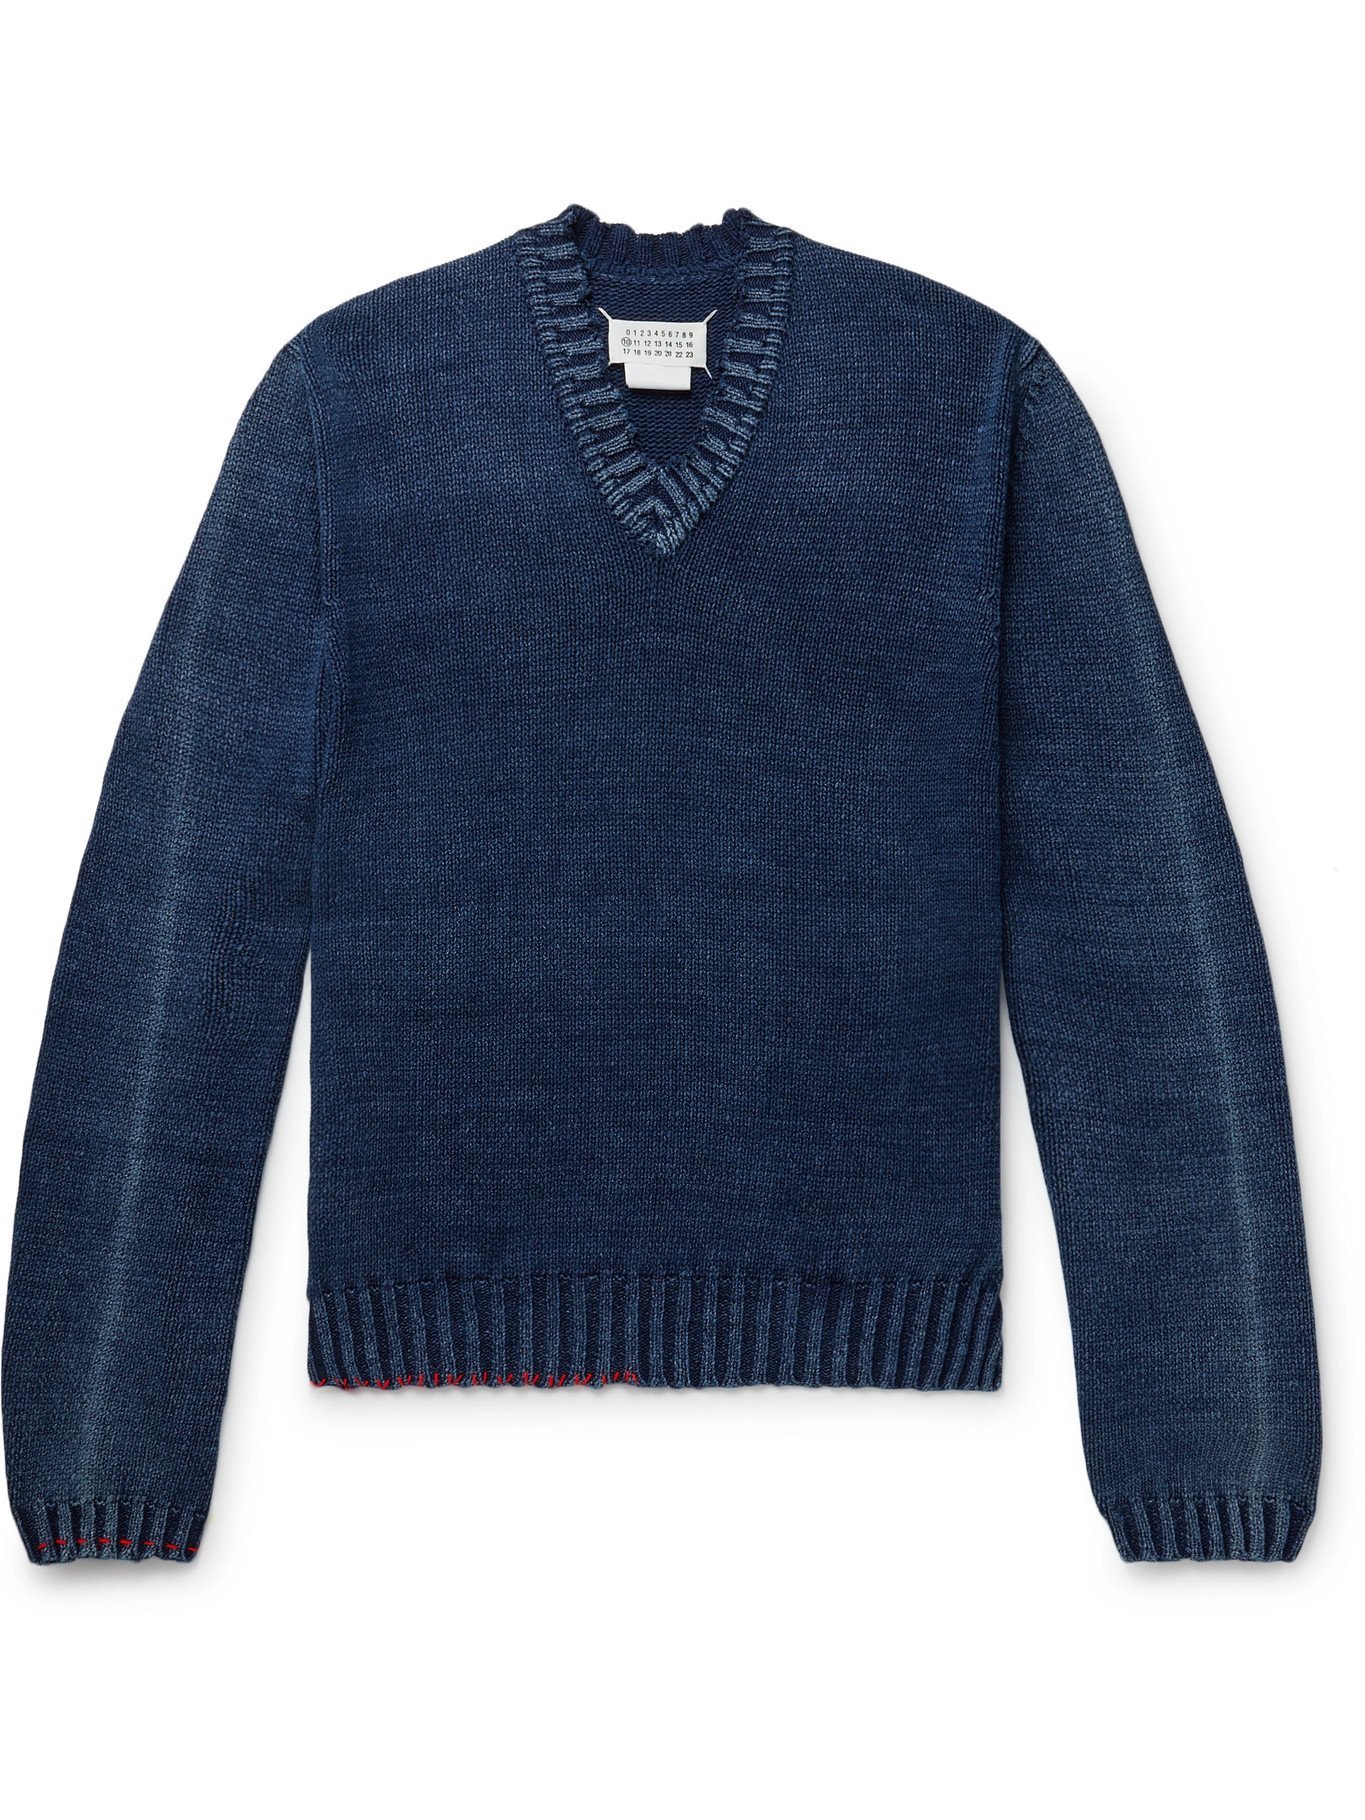 MAISON MARGIELA - Distressed Cotton-Blend Sweater - Blue Maison Margiela